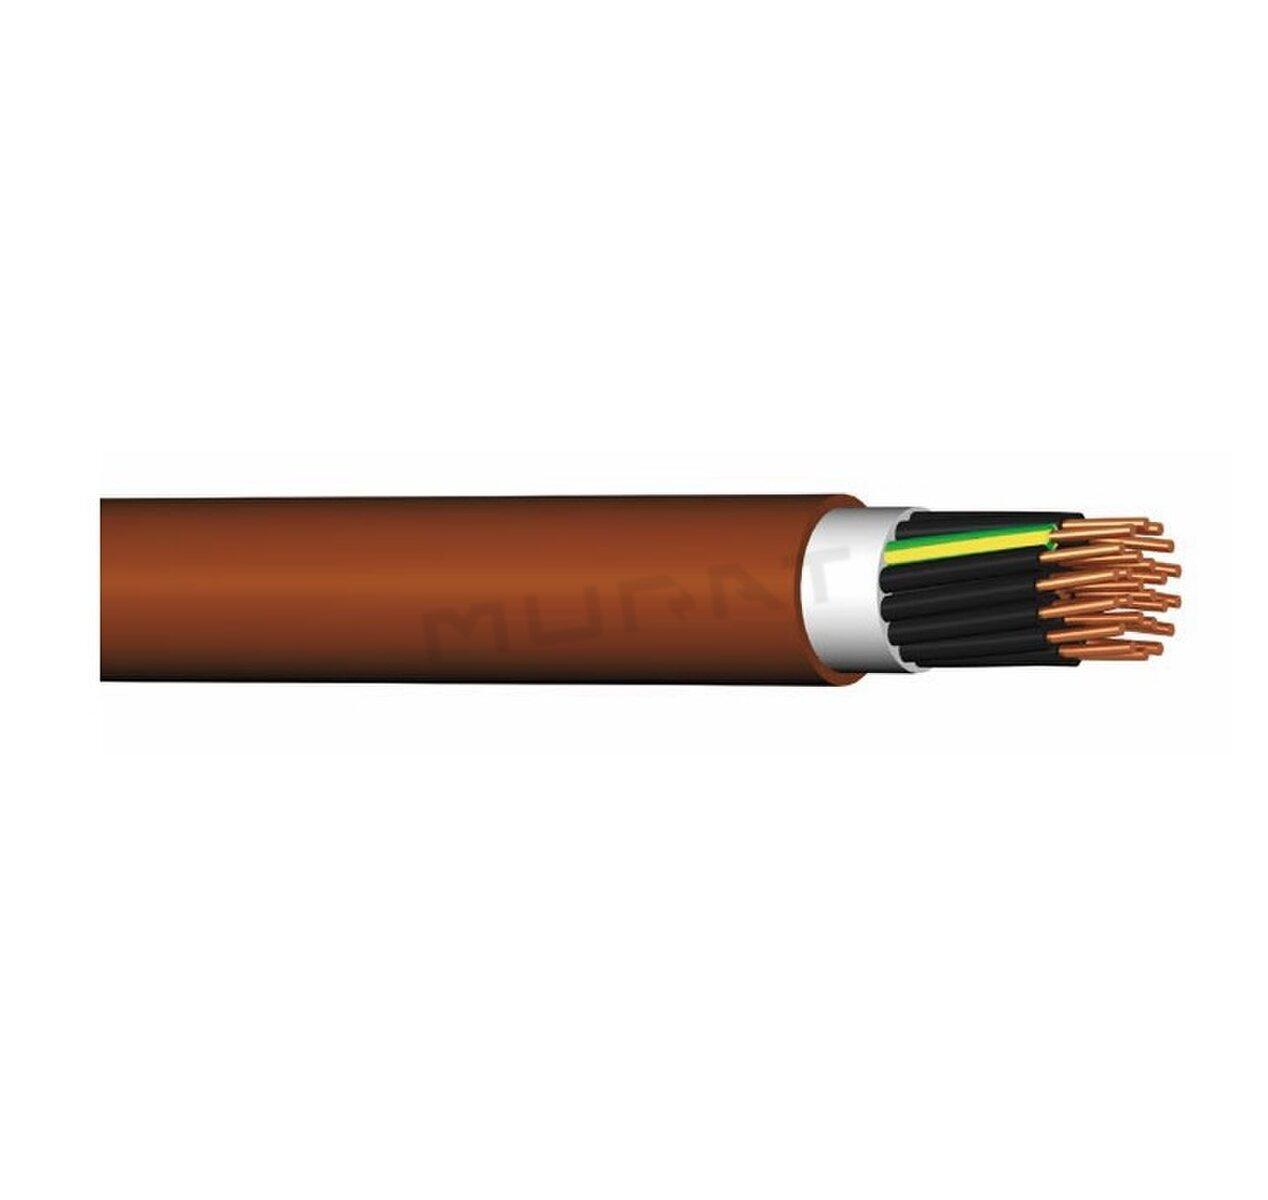 Kábel PRAFlaDur-J 5x50 mm2 RM PH120-R, PS15-PS60, B2cas1d1a1 silový